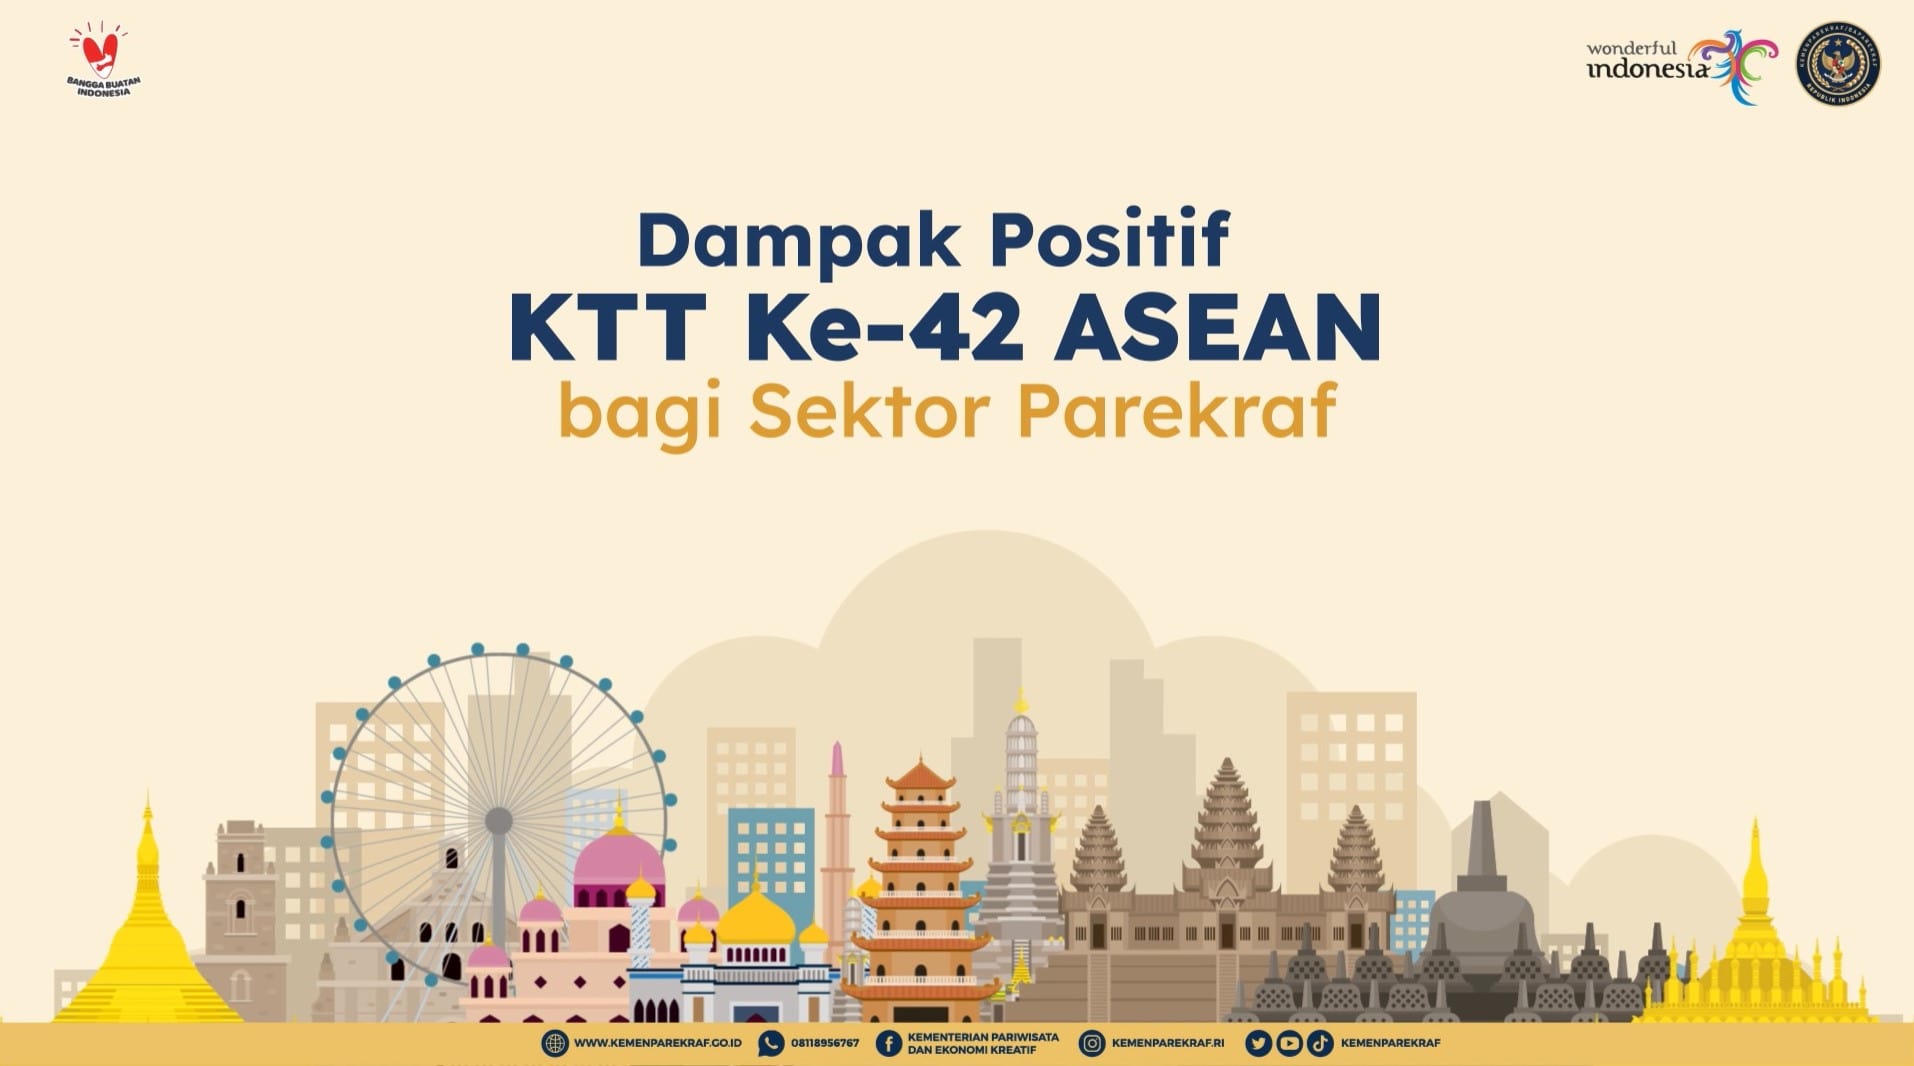 Dampak Positif KTT Ke-42 ASEAN bagi Sektor Parekraf